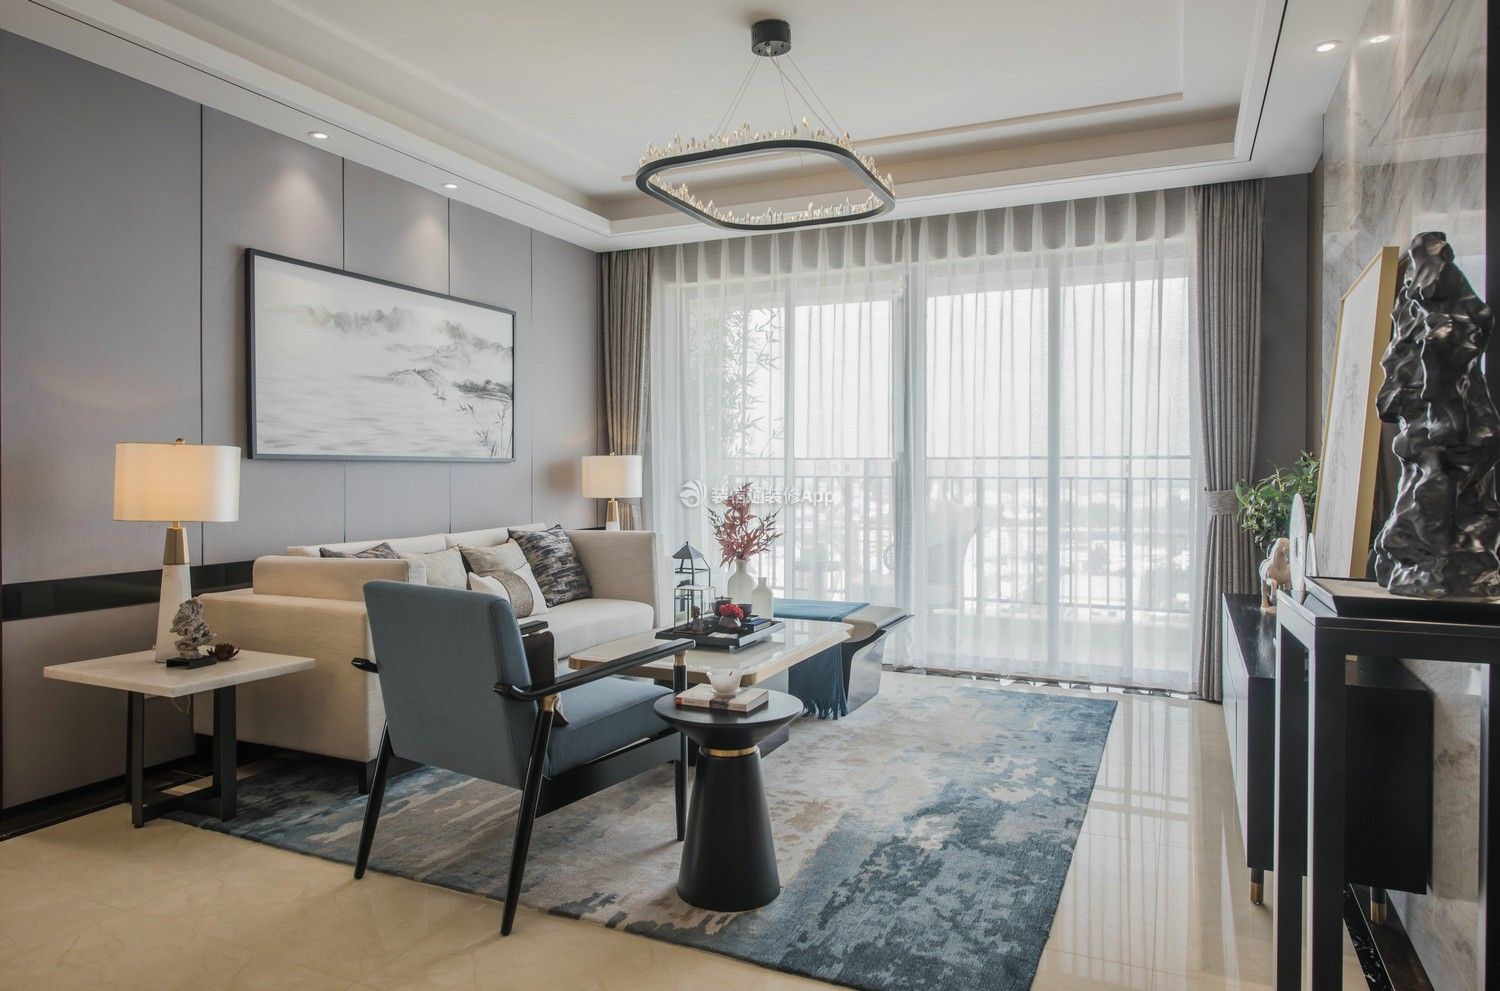 中式客厅沙发效果图 中式客厅窗帘效果图大全2020图片